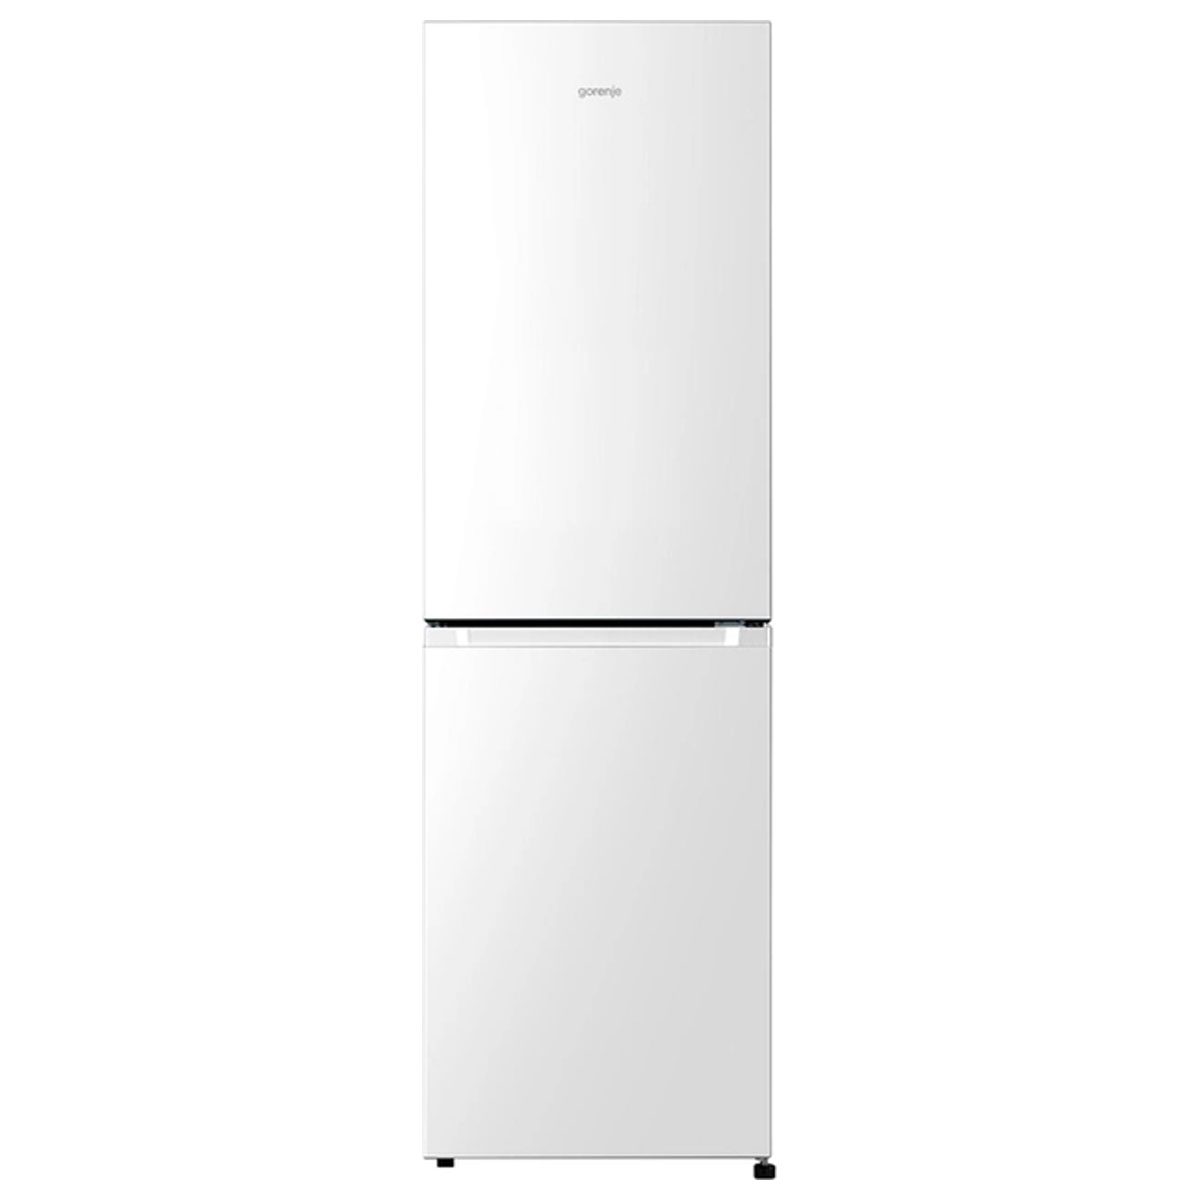 Холодильник комбинированный GORENJE NRK 4181 CW4